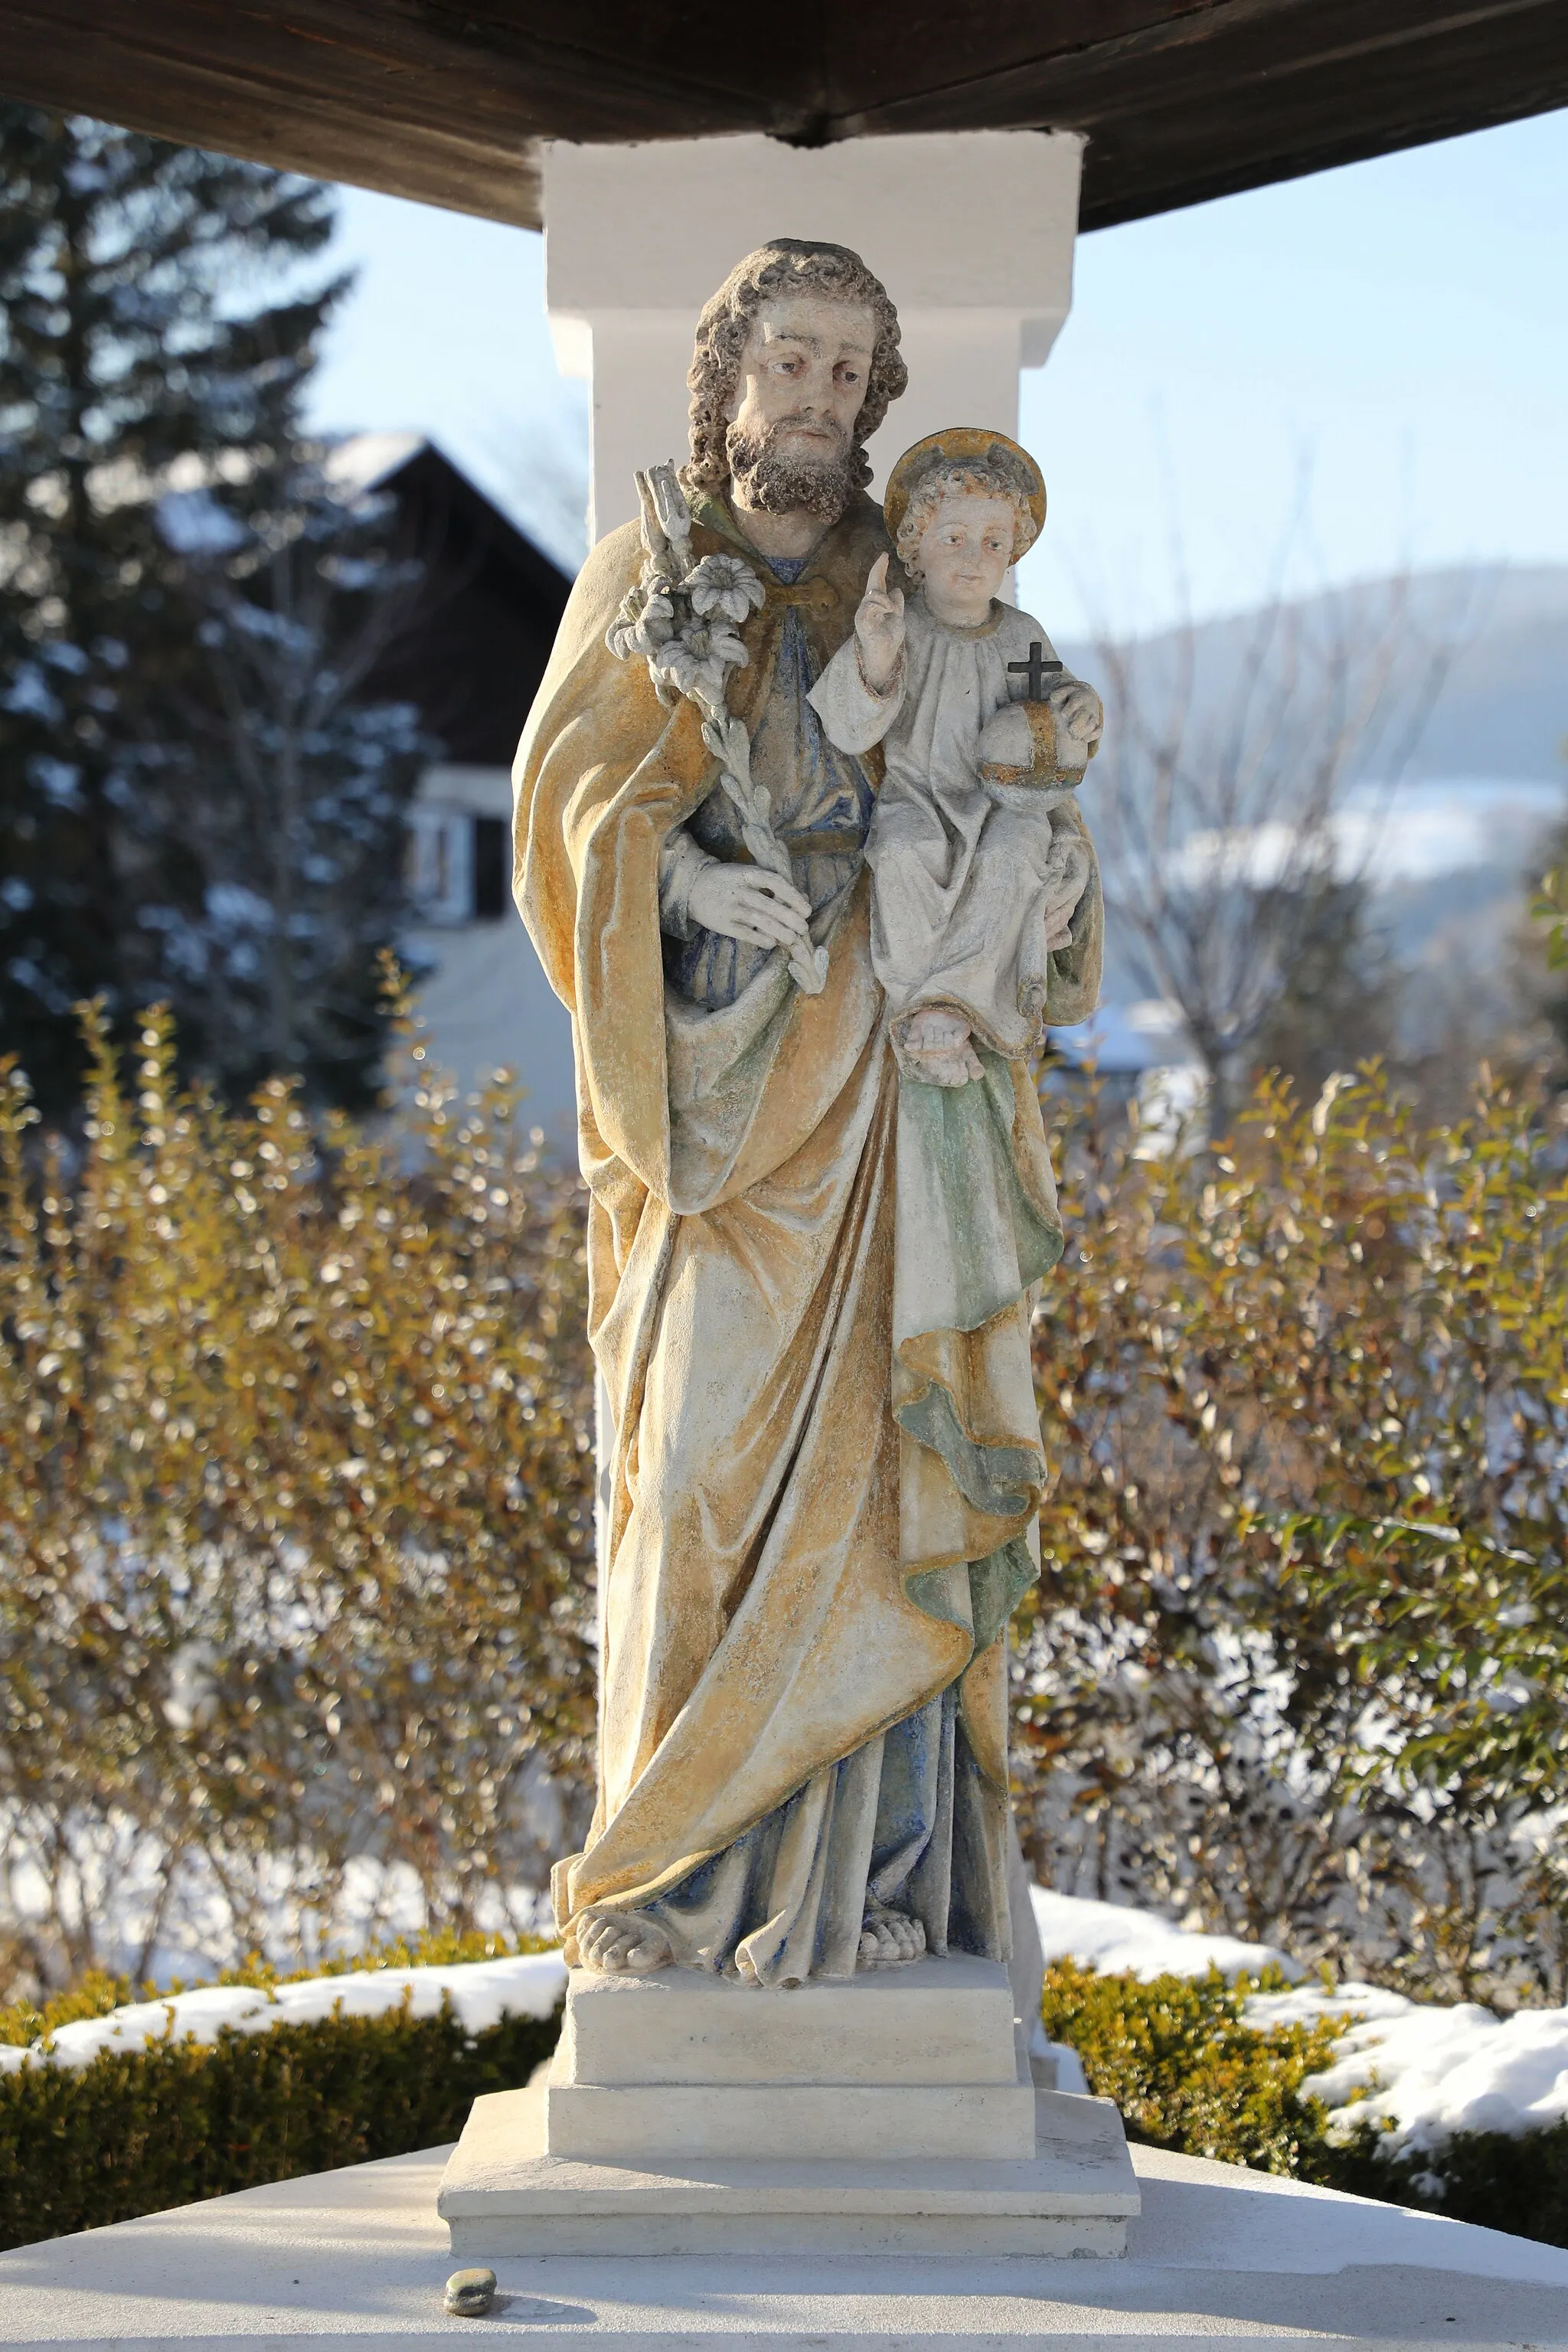 Photo showing: Figurenbildstock des heiligen Joseph in Kainberg, Gemeinde Kumberg, Steiermark.